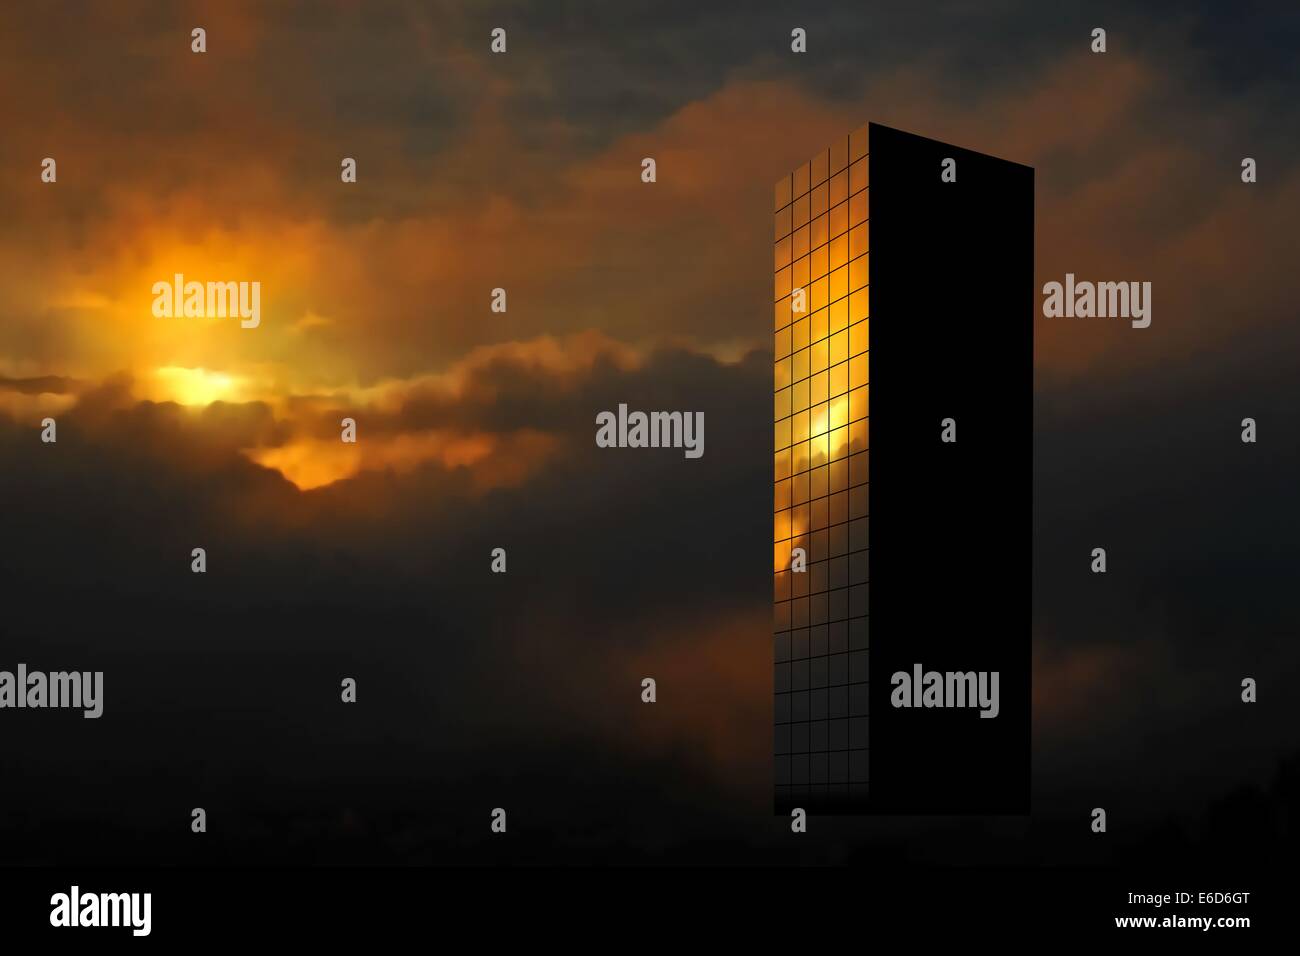 Bearbeitbares Vektor-Illustration eines Wolkenkratzers reflektieren die aufgehende Sonne mit Farbverlauf Maschen gemacht Stock Vektor